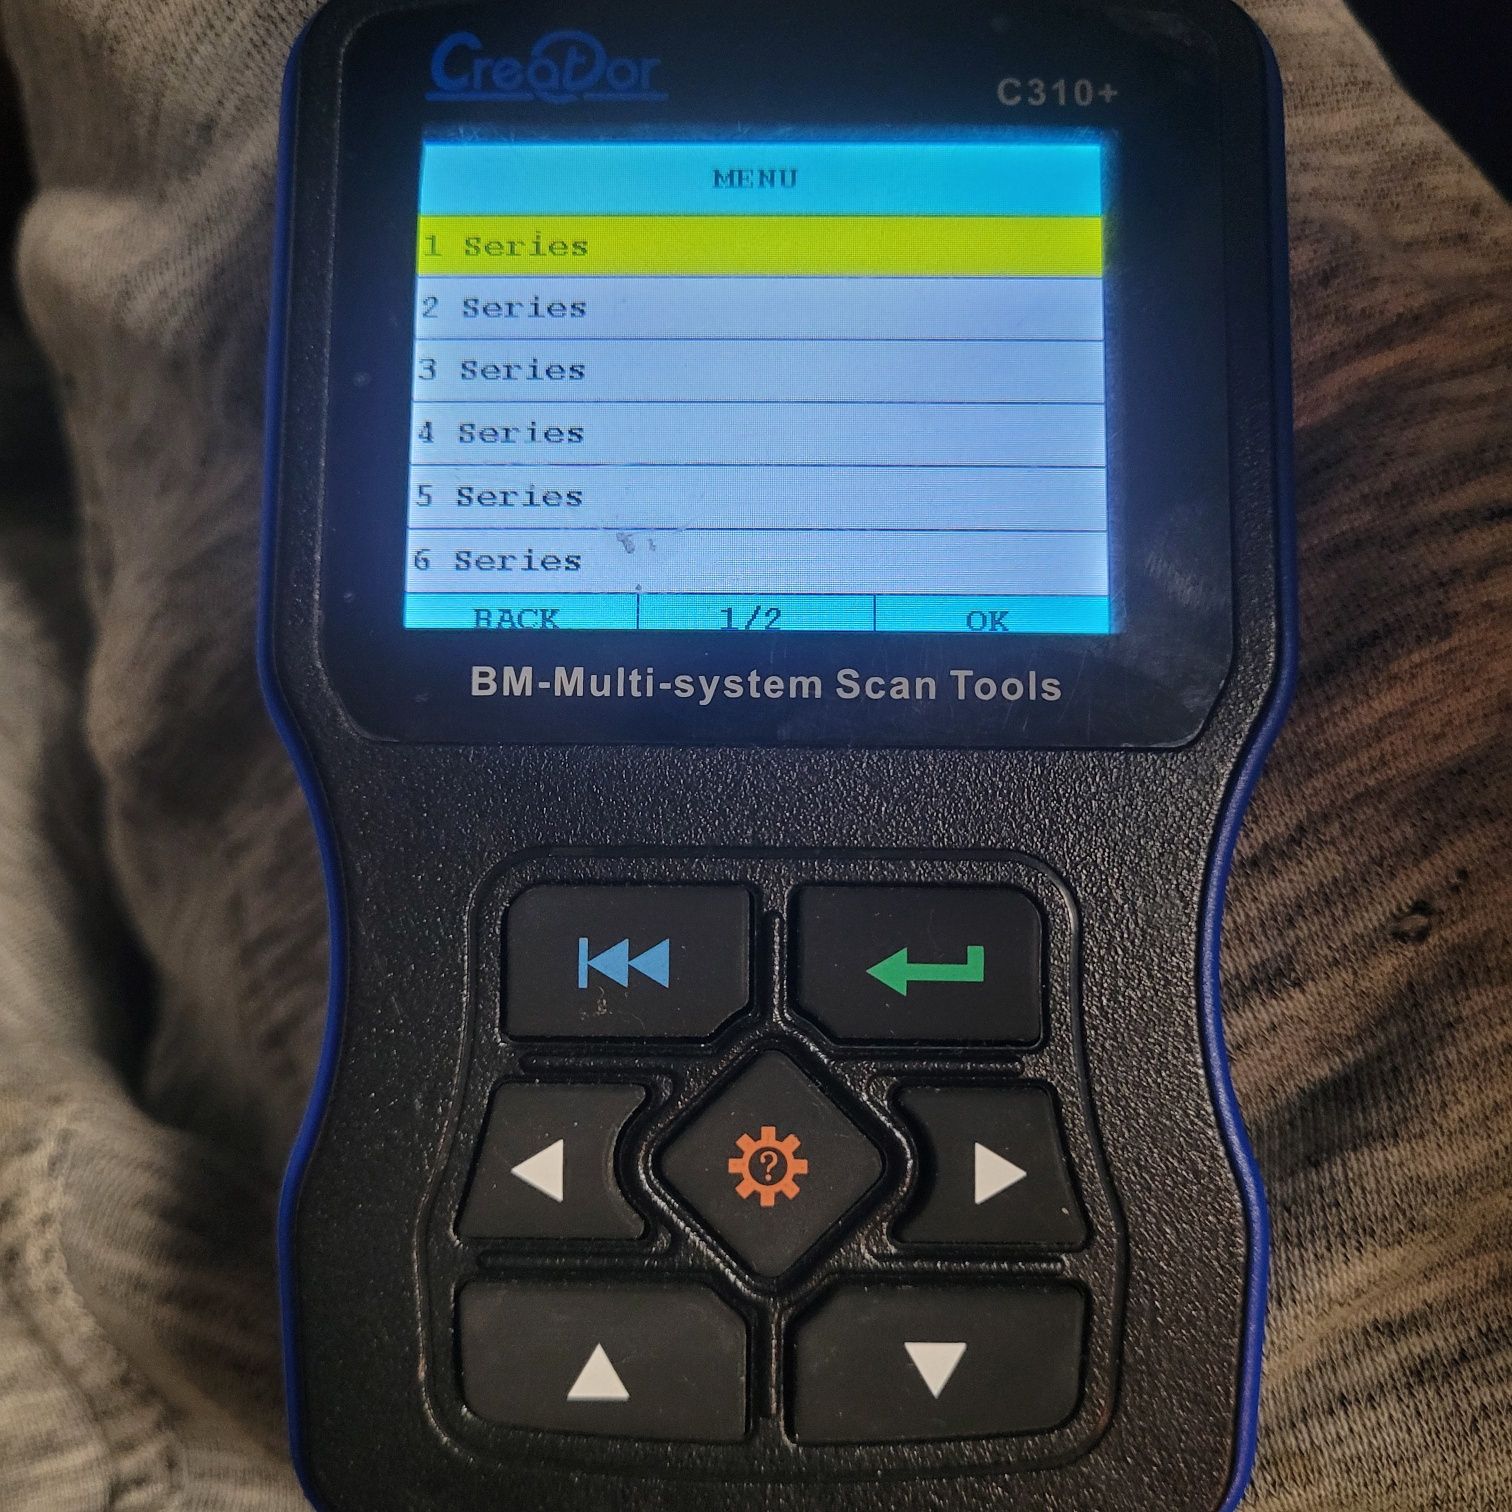 Sprzedam scanner  diadnostyczny do BMW creador 310+